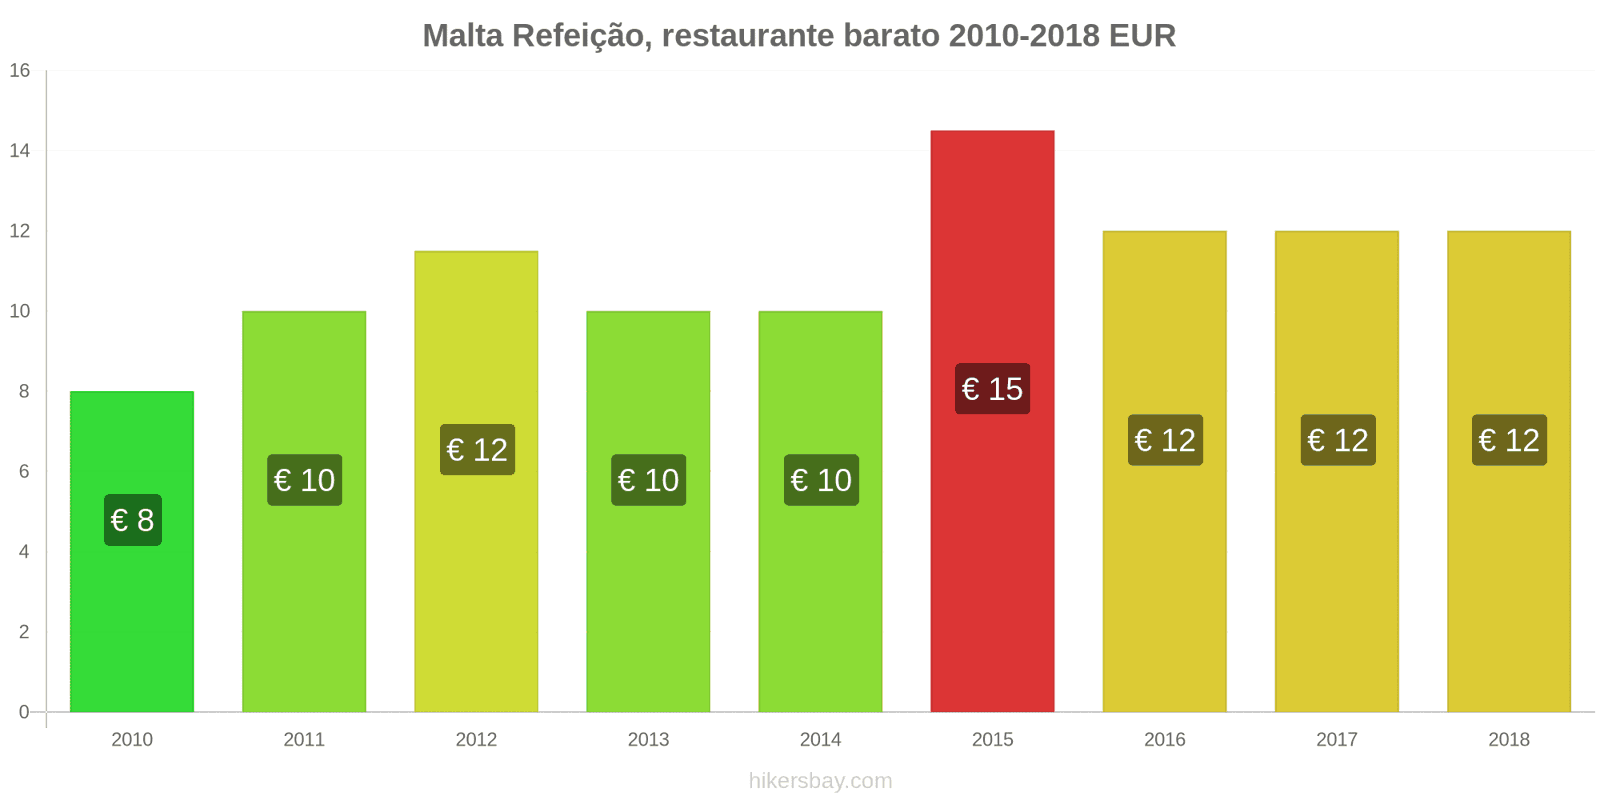 Malta mudanças de preços Refeição em um restaurante econômico hikersbay.com